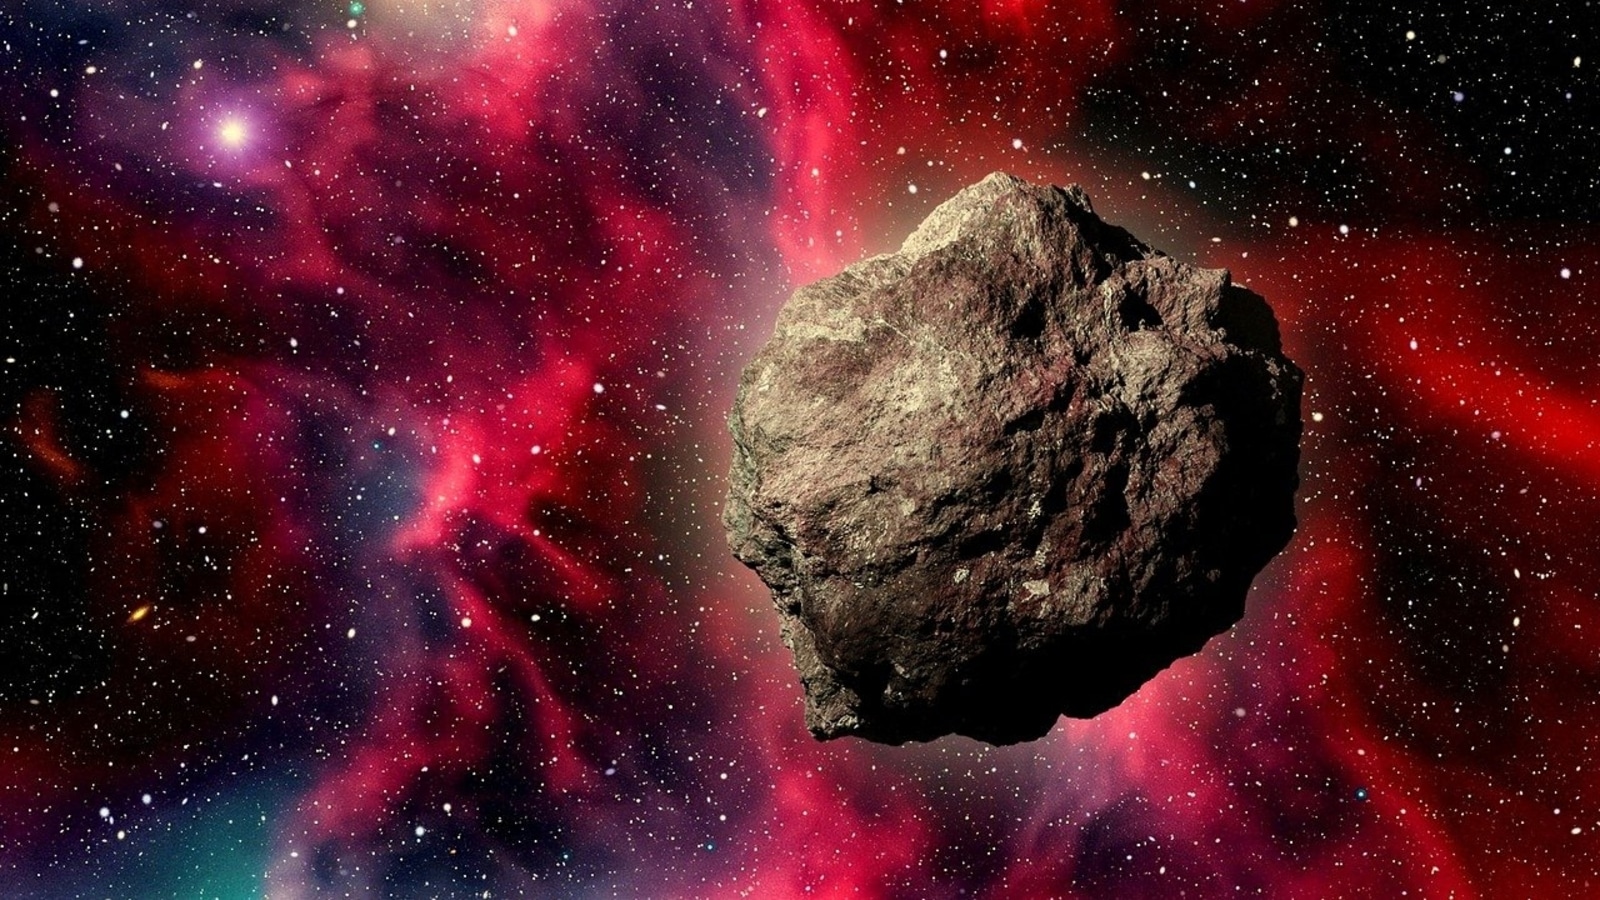 НАСА сообщает, что в ближайшие дни мимо Земли пройдут 5 астероидов;  От размера до скорости: узнайте все о космических камнях